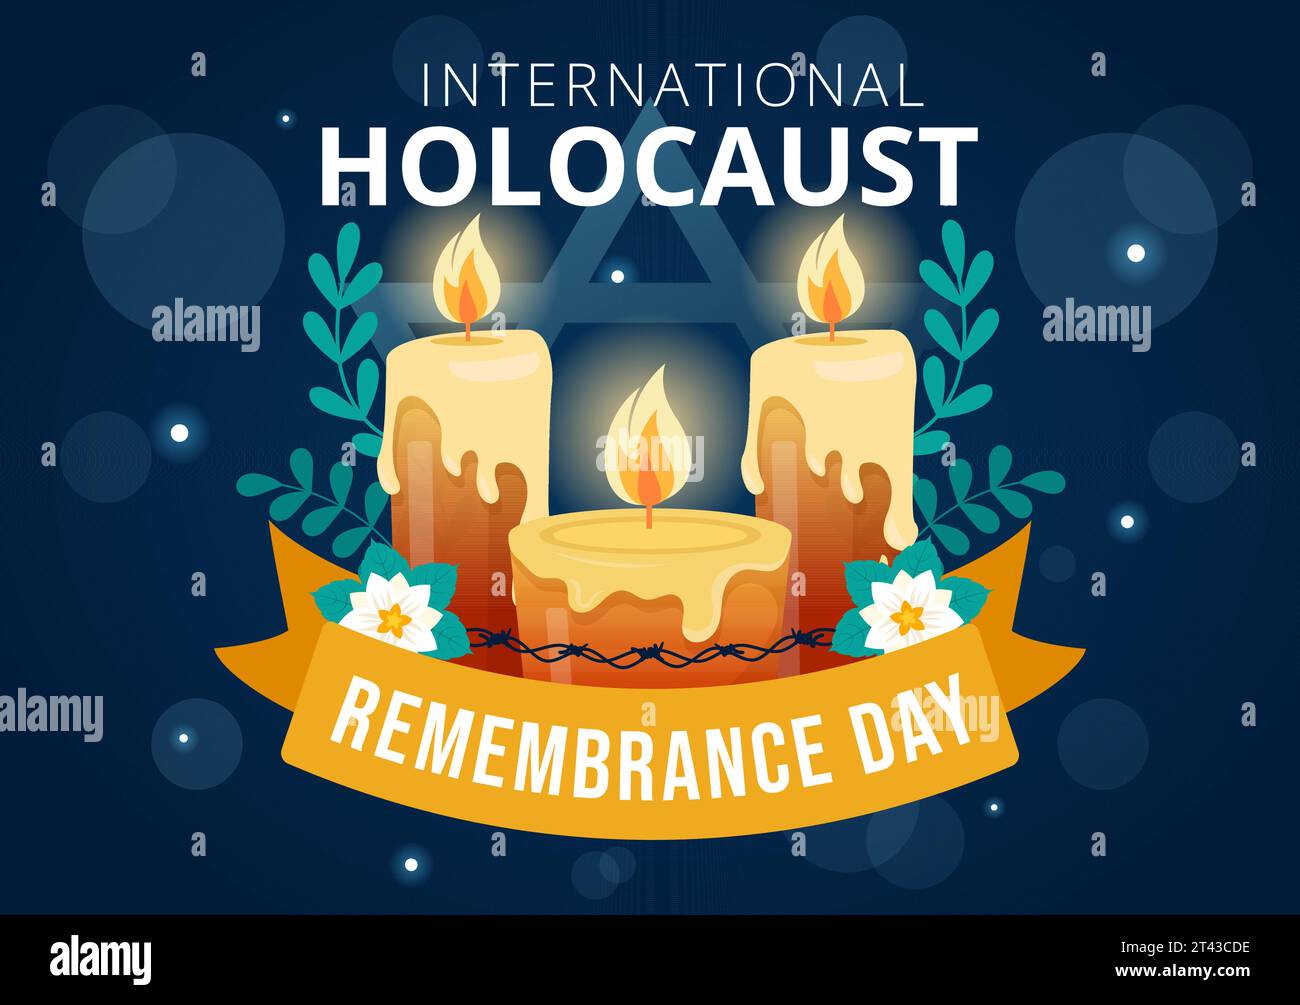 Internationaler Holocaust-Gedenktag Vektor-Illustration am 27. Januar mit gelbem Stern und Kerze zum Gedenken an die Opfer in flachem Hintergrund Stock Vektor